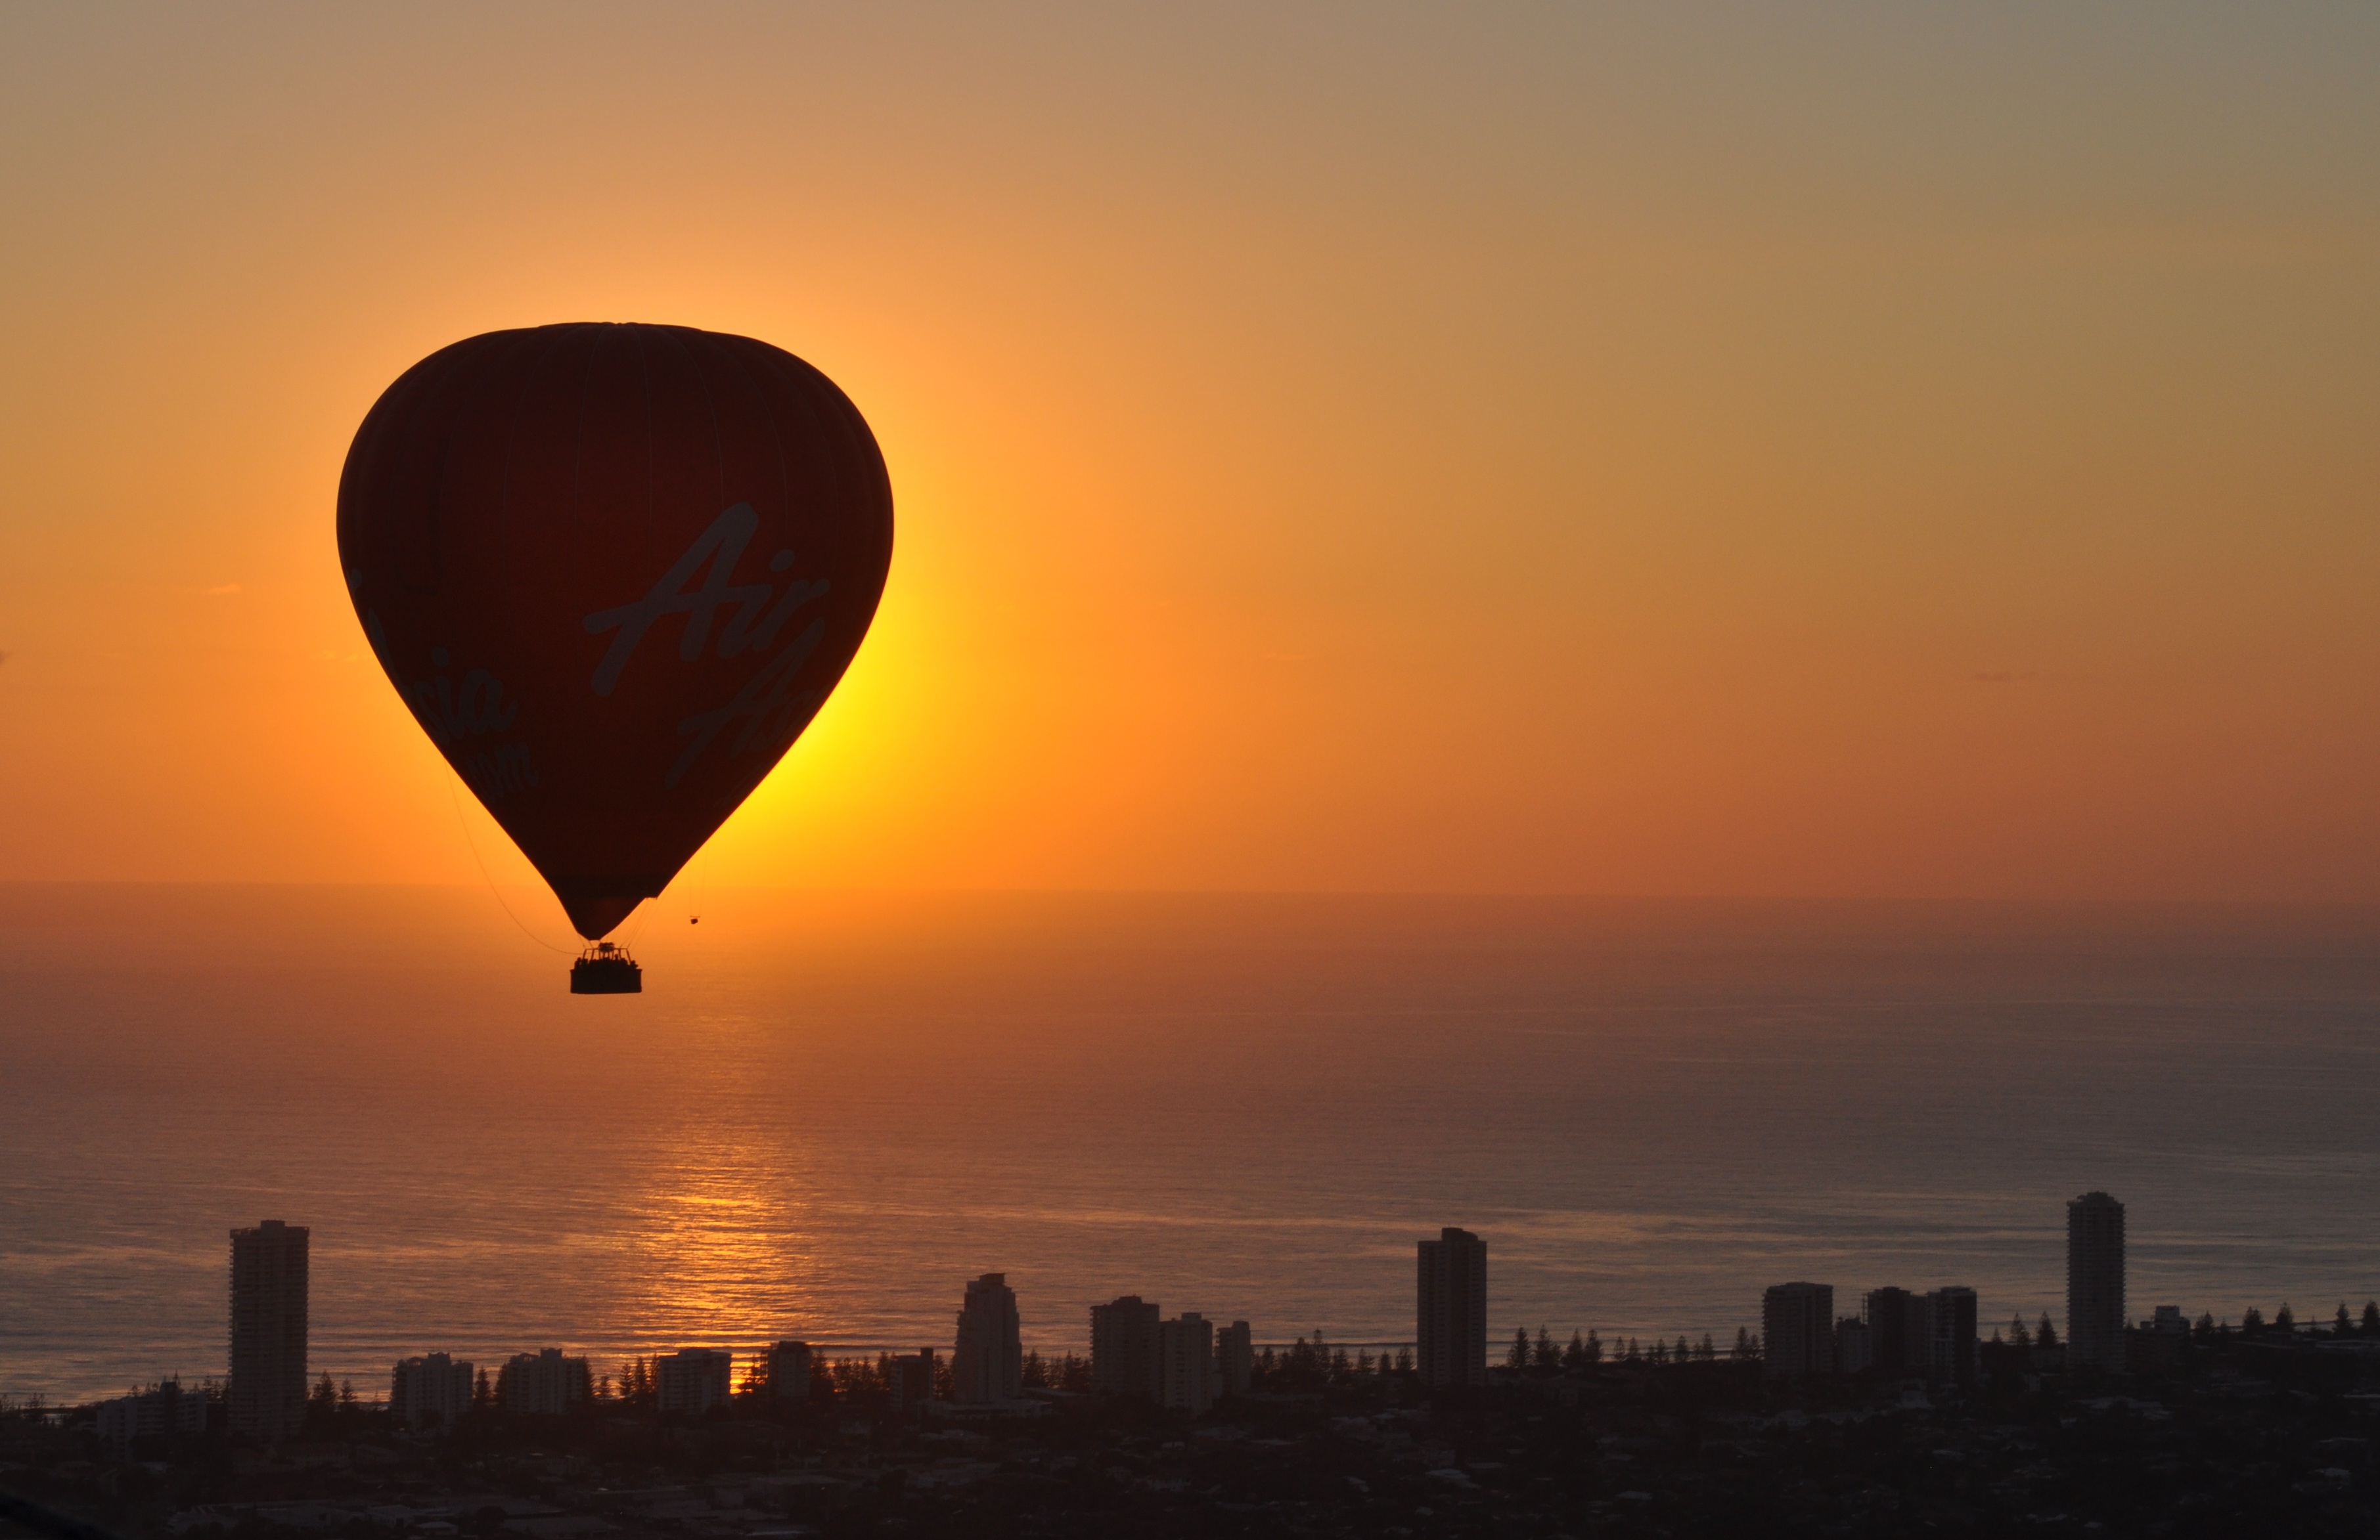 Gold Coast Hot Air Balloon Ride